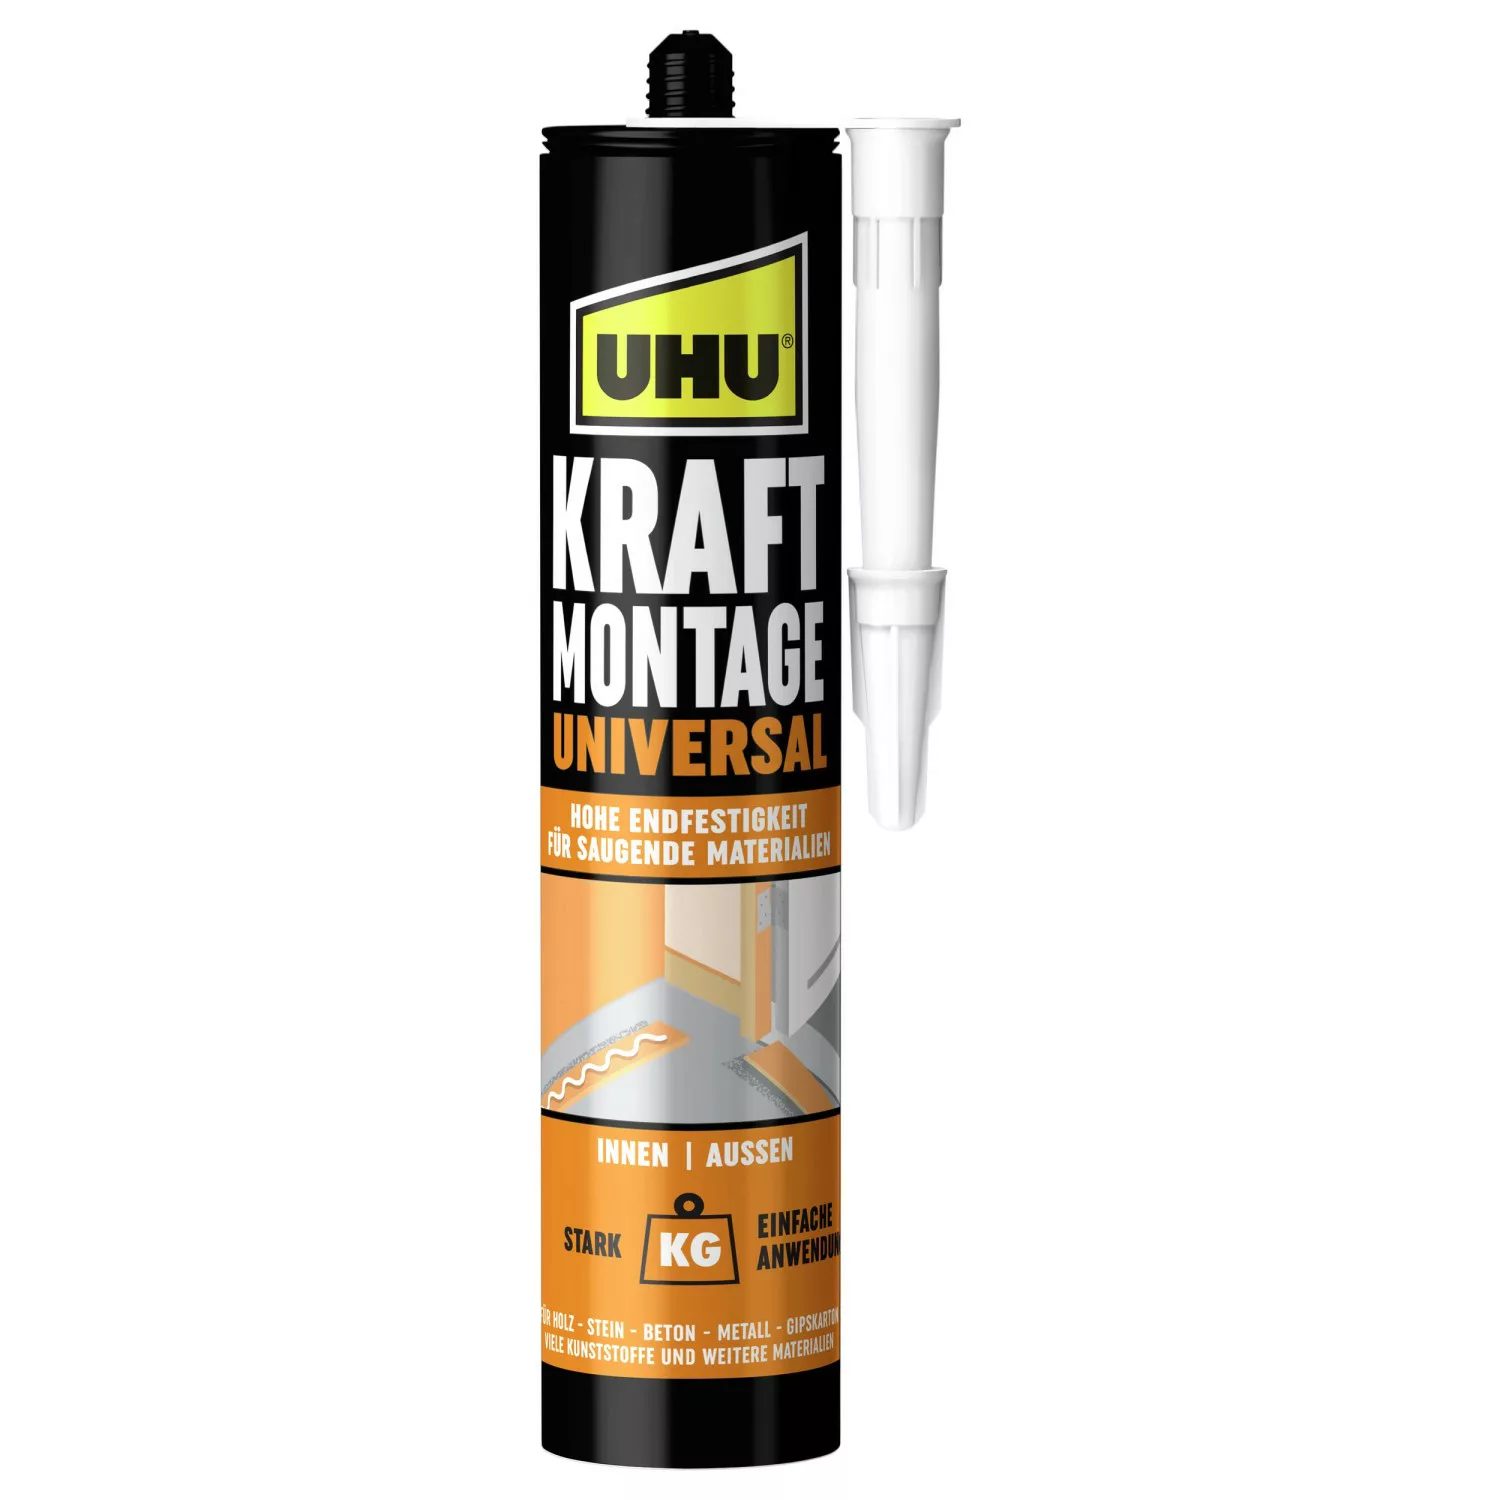 UHU Kraft Montage Universal Kartusche 470 g günstig online kaufen